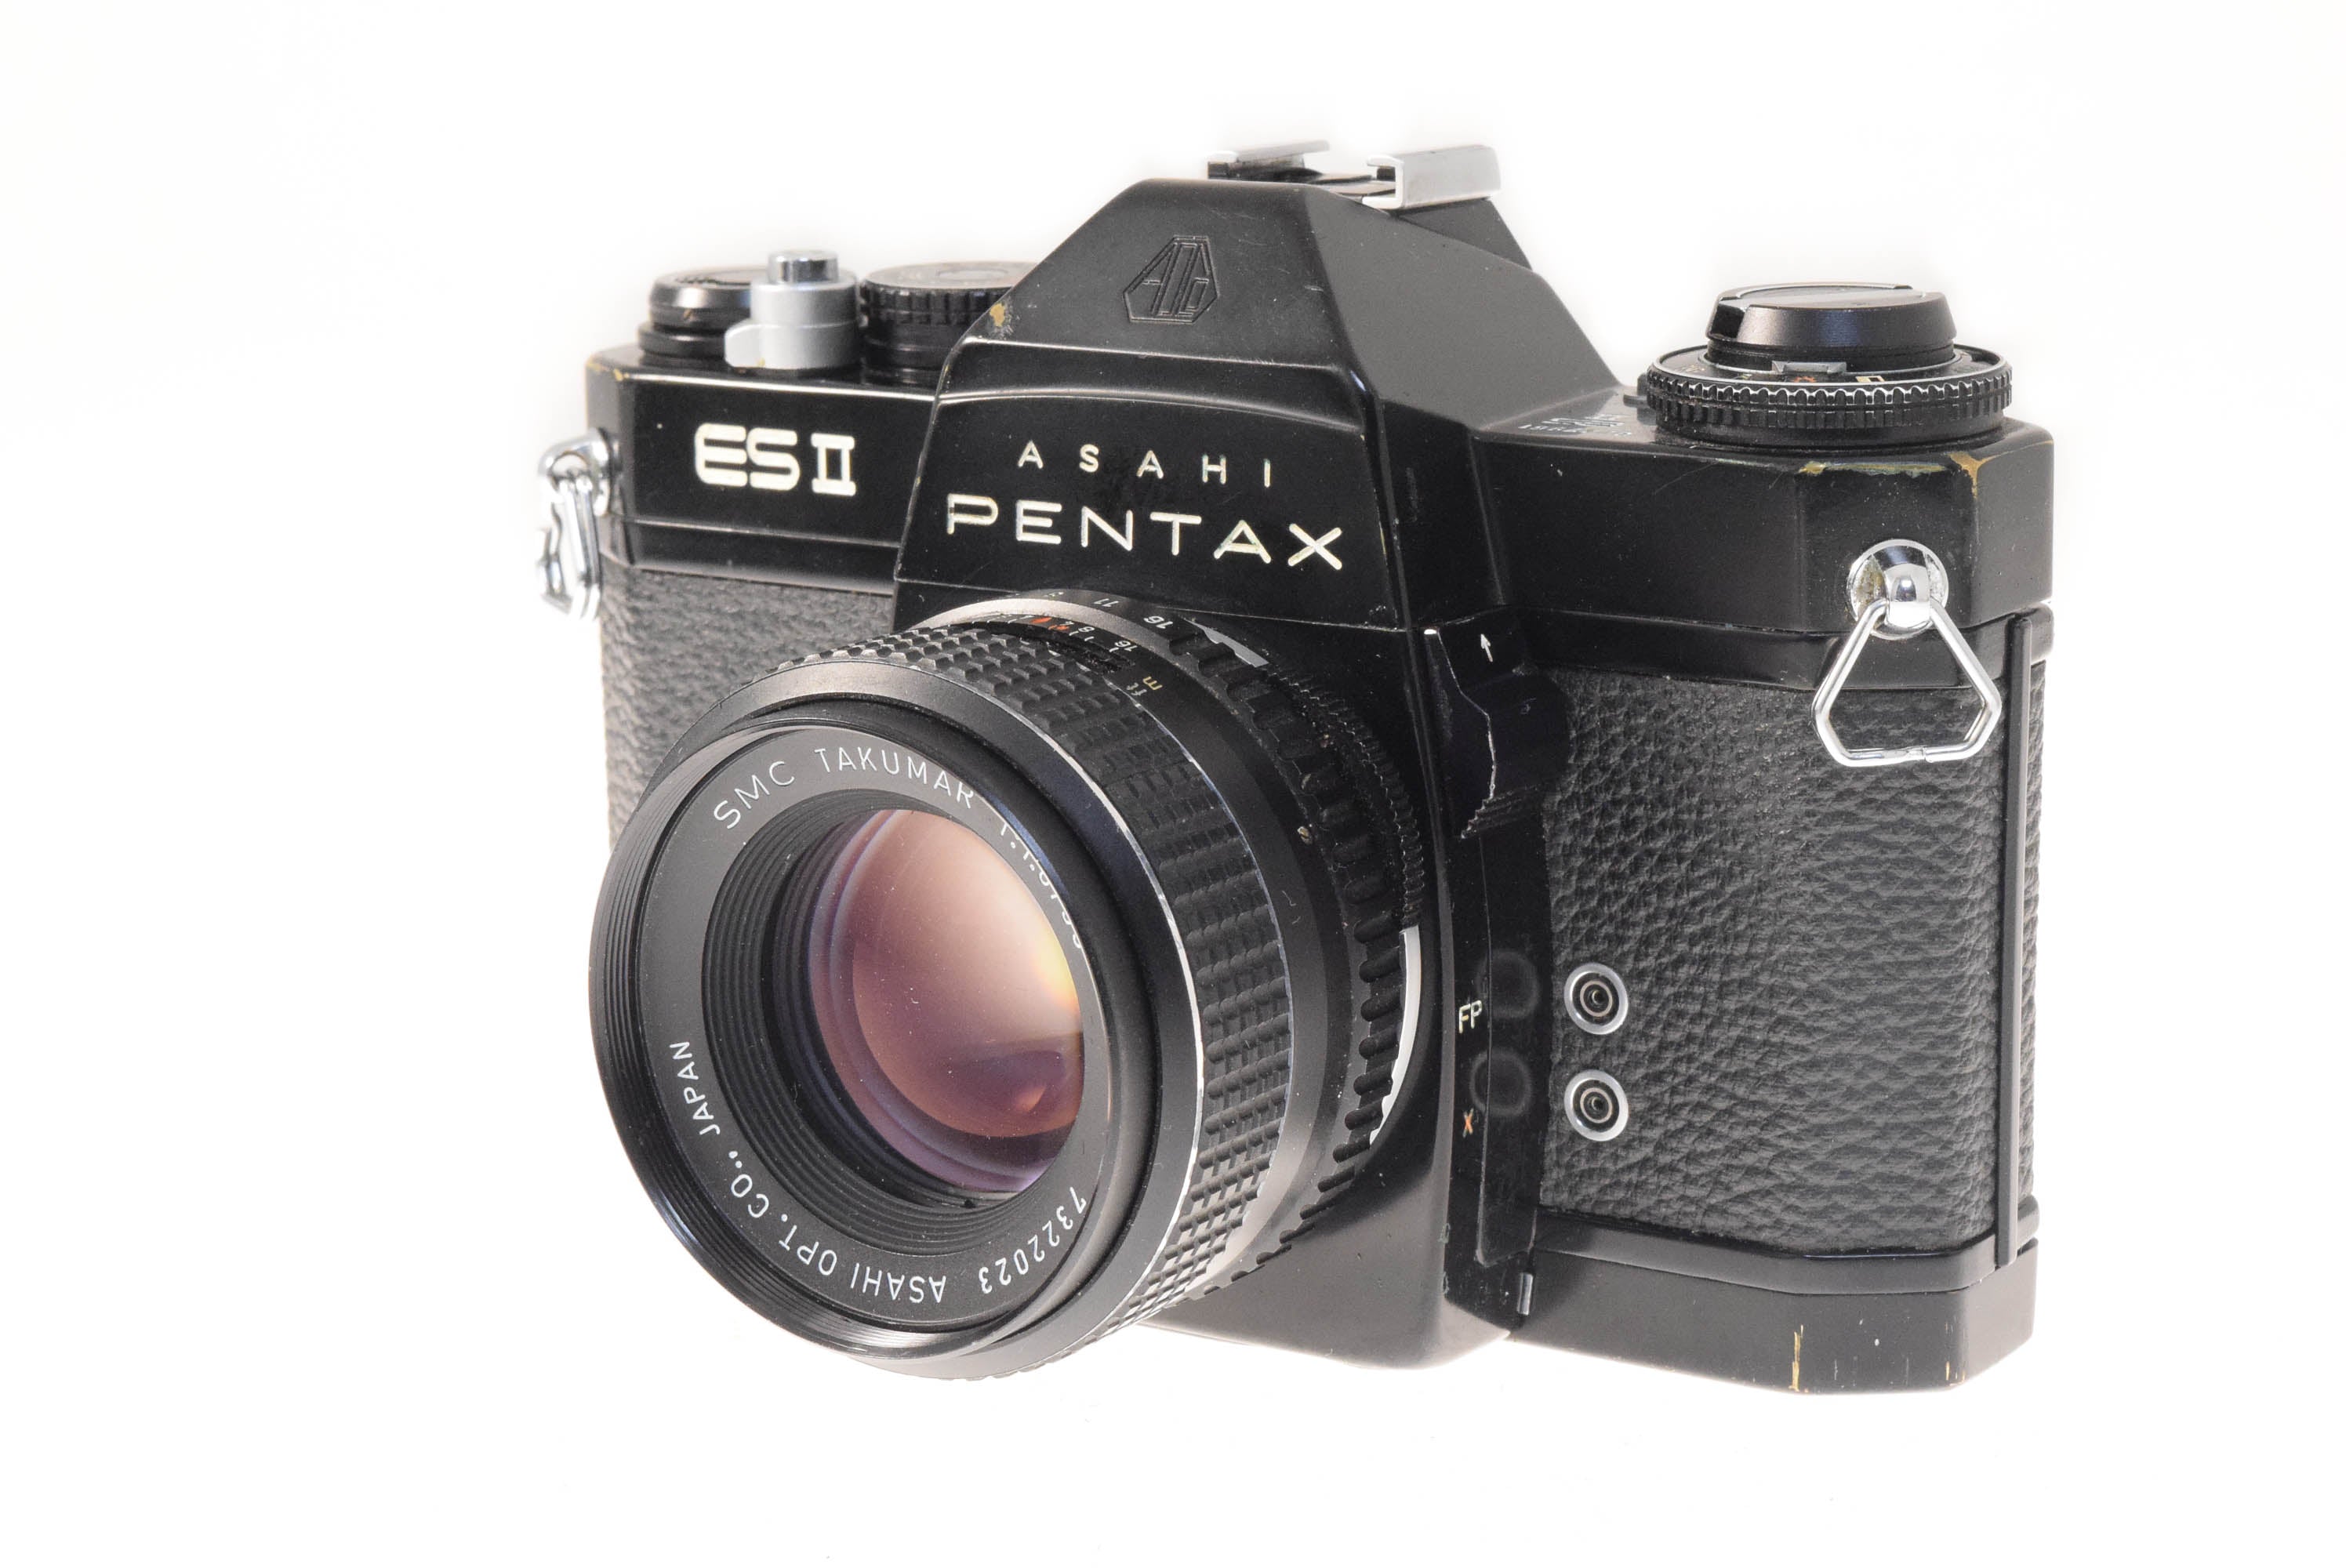 Pentax ES II + 55mm f1.8 SMC Takumar